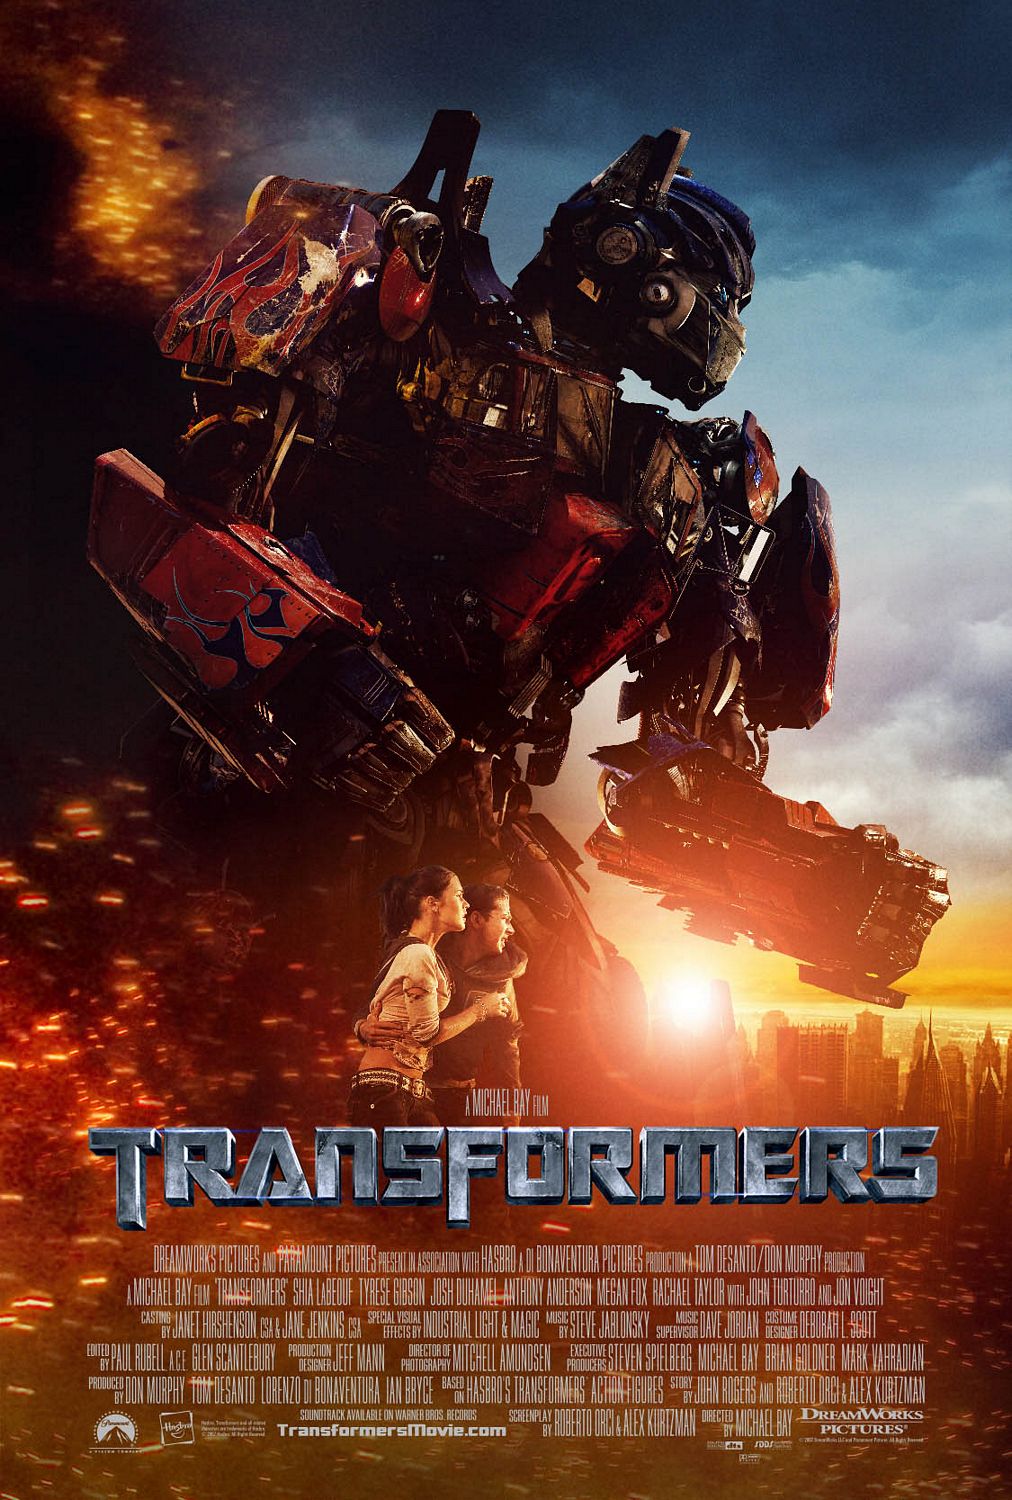 ดูหนังออนไลน์ฟรี Transformers 1 มหาวิบัติจักรกลสังหารถล่มจักรวาล 2007 พากย์ไทย